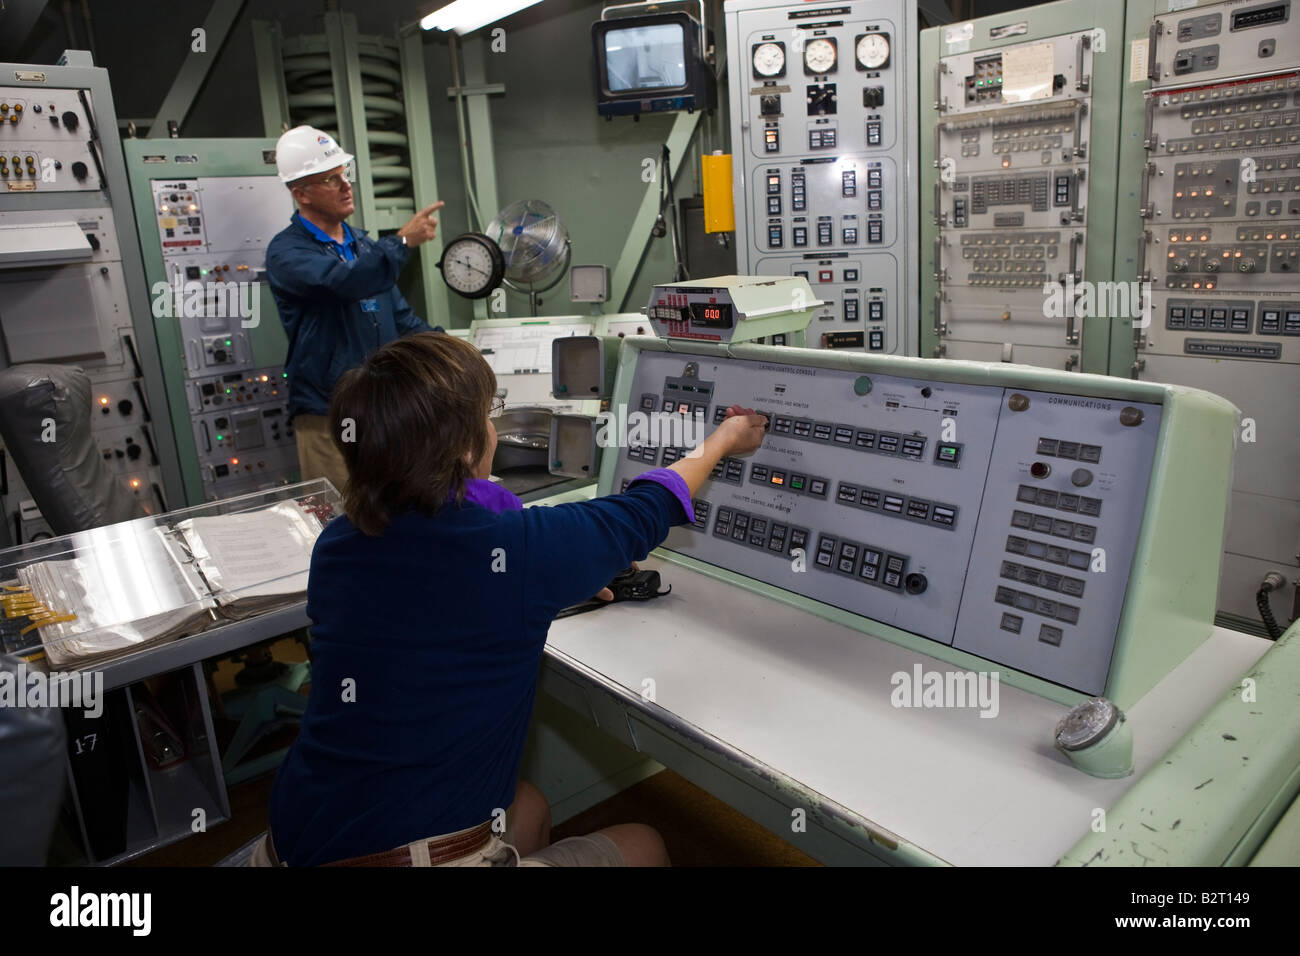 Femme assise à la console de contrôle de mission et en tournant la clé de lancement. Musée du missile Titan II près de Tucson en Arizona, USA Banque D'Images